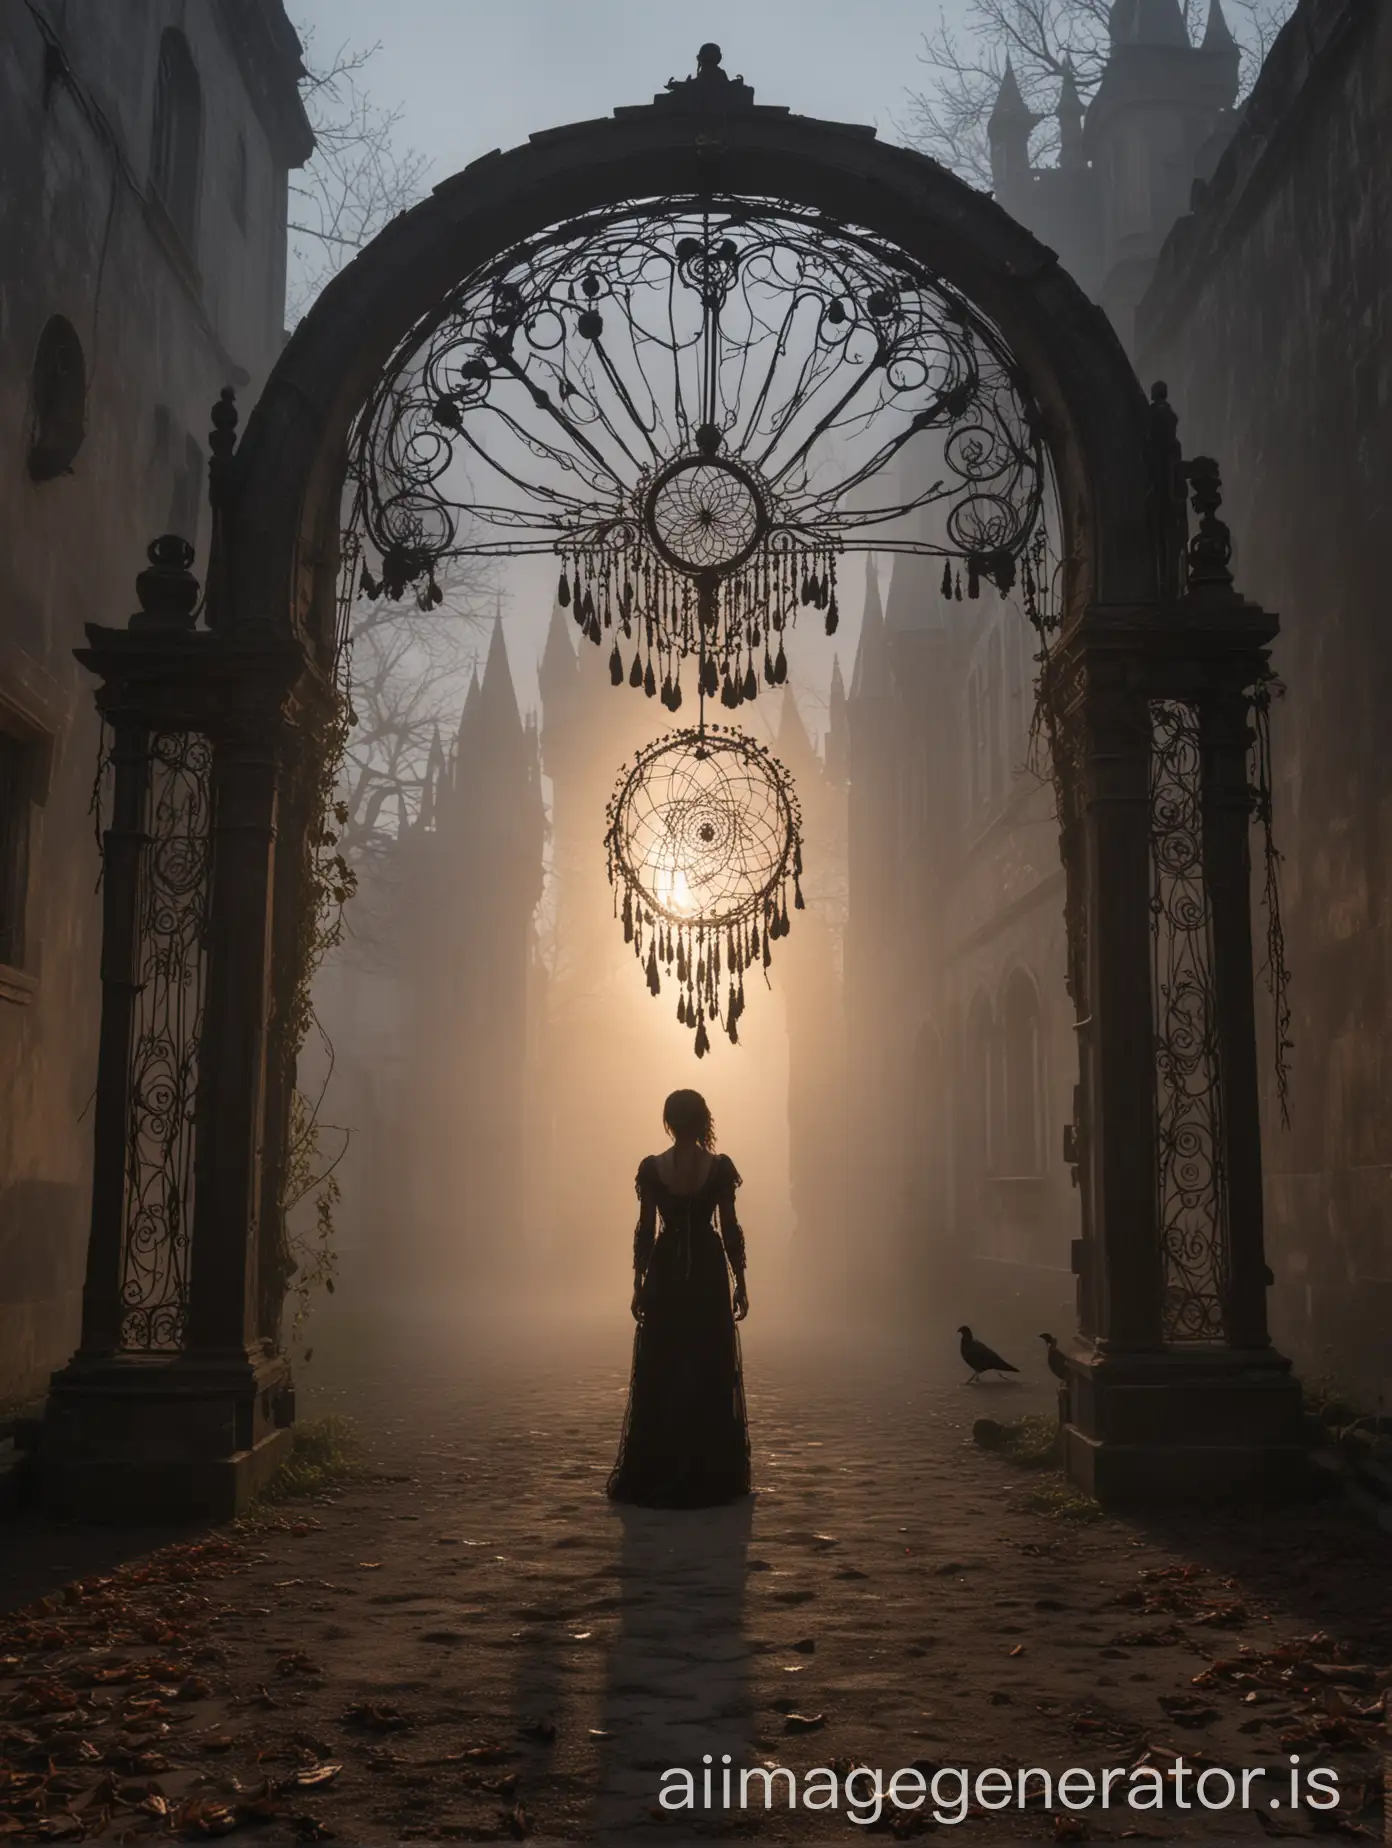 Tajemnicza postać kobiety ubranej w czarną suknię stoi na dziedzińcu neogotyckiego zamku, otulonego gęstą mgłą, podczas zachodu słońca. W dłoni trzyma łapacz snów, a wokół niej unoszą się kruki. Uchwyć tę scenę aparatem pełnoklatkowym, korzystając z obiektywu szerokokątnego o ogniskowej 20 mm. Przesłona ustalona na 5.6, czas naświetlania 1/125 sekundy. Skup się na kompozycji zamkniętej i symetrycznej, nawiązując do epoki wiktoriańskiej stylistyką każdego detalu. Cała postać musi być widoczna od stóp do głowy, a kadr powinien emanować tajemniczym nastrojem.
